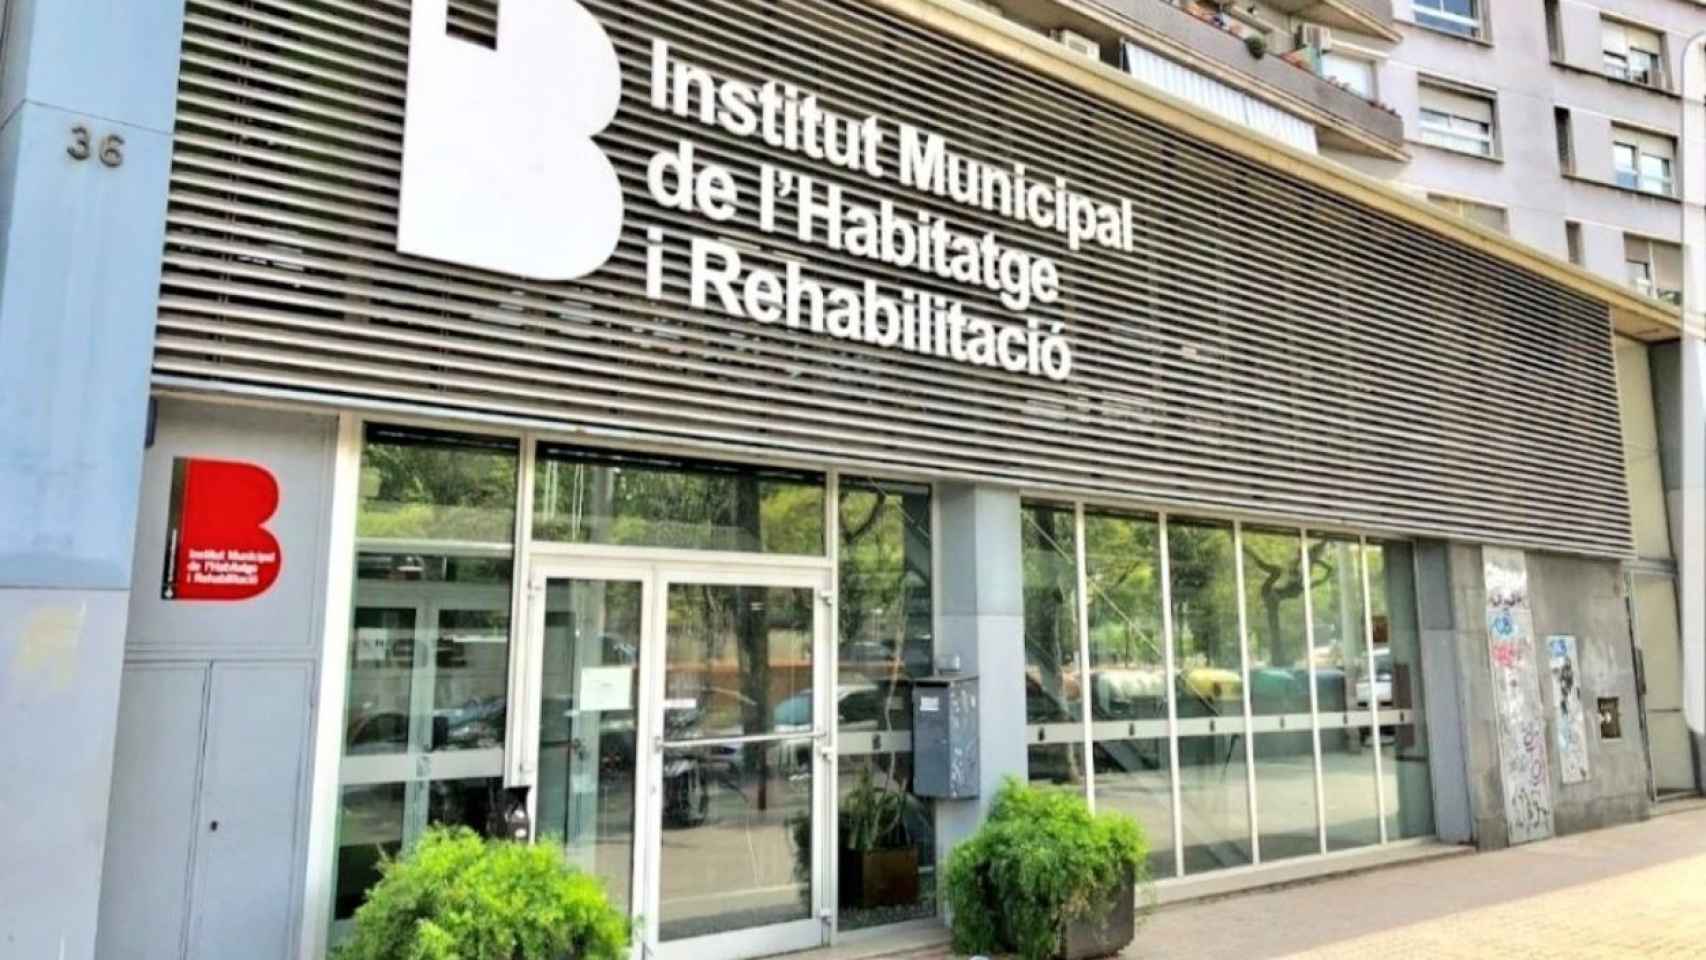 Sede del Institut Municipal de l'Habitatge de Barcelona / @IMHABenlluita